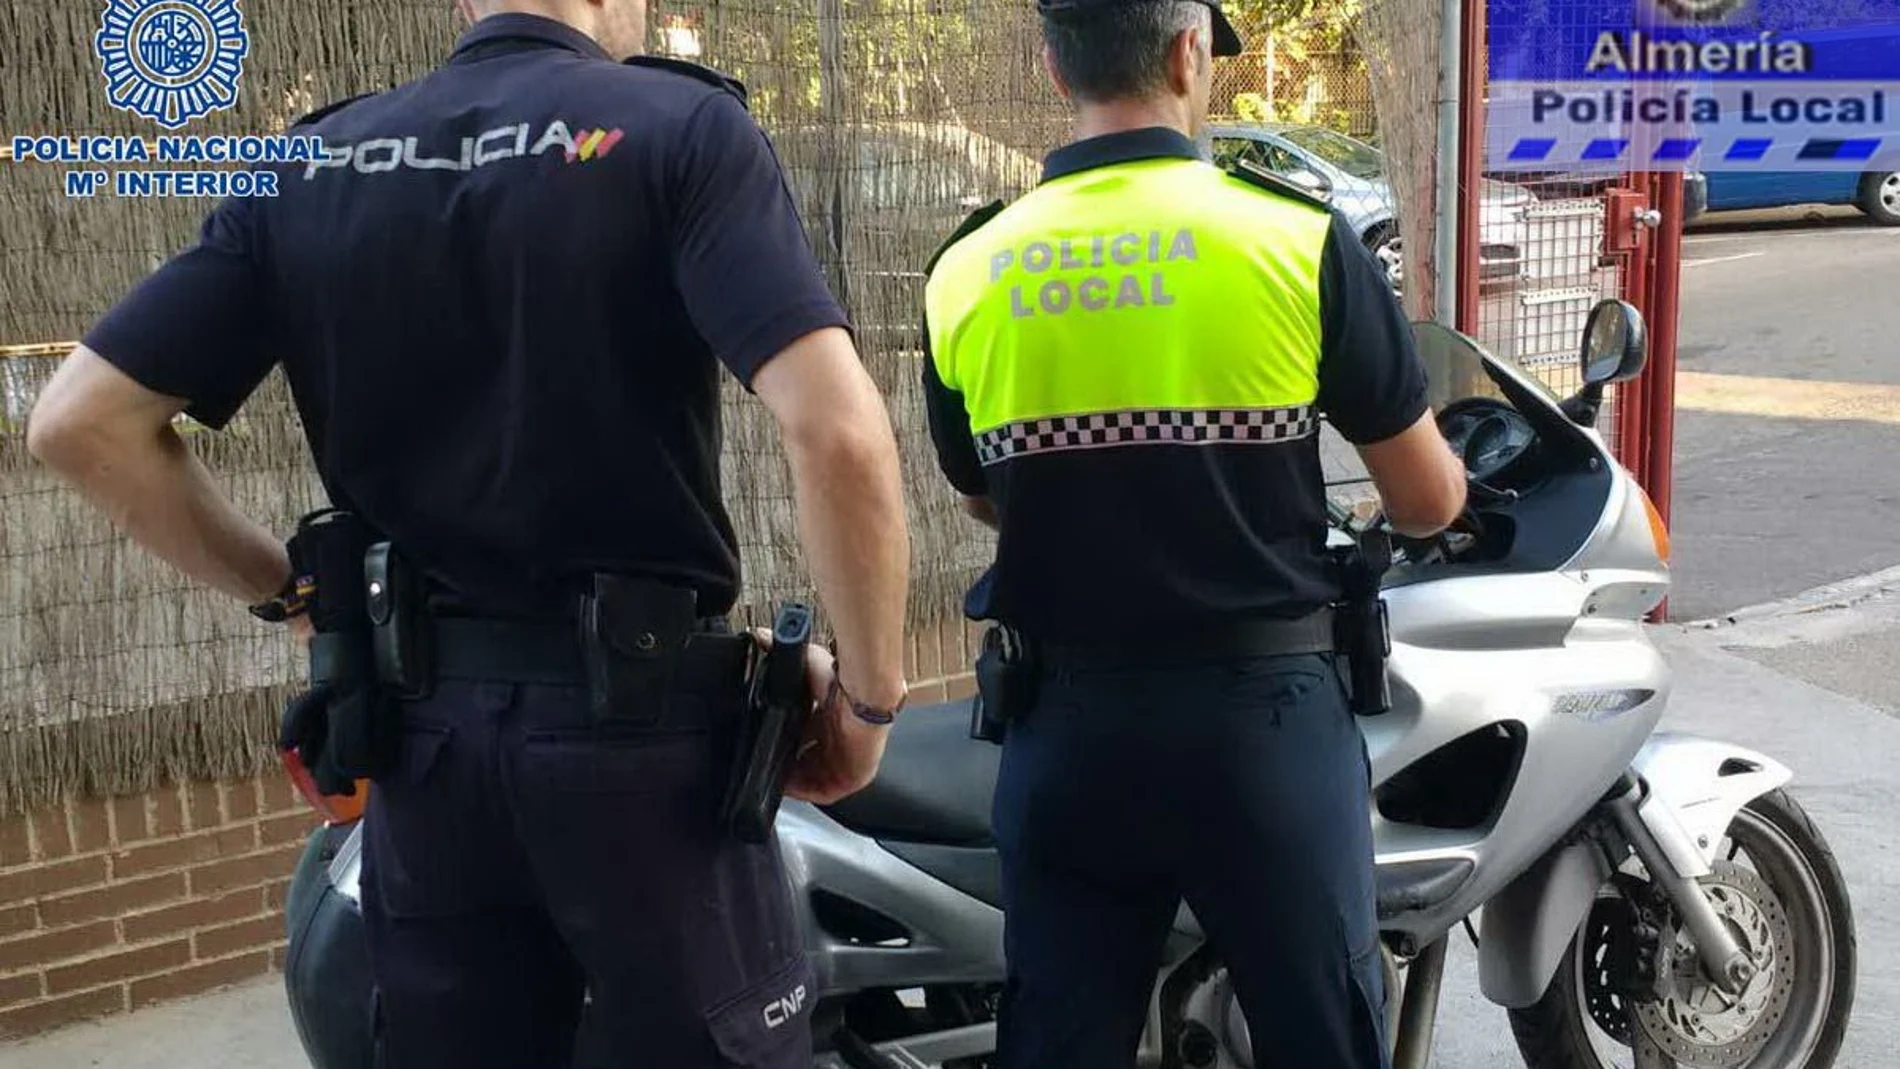 Policía local de Almería